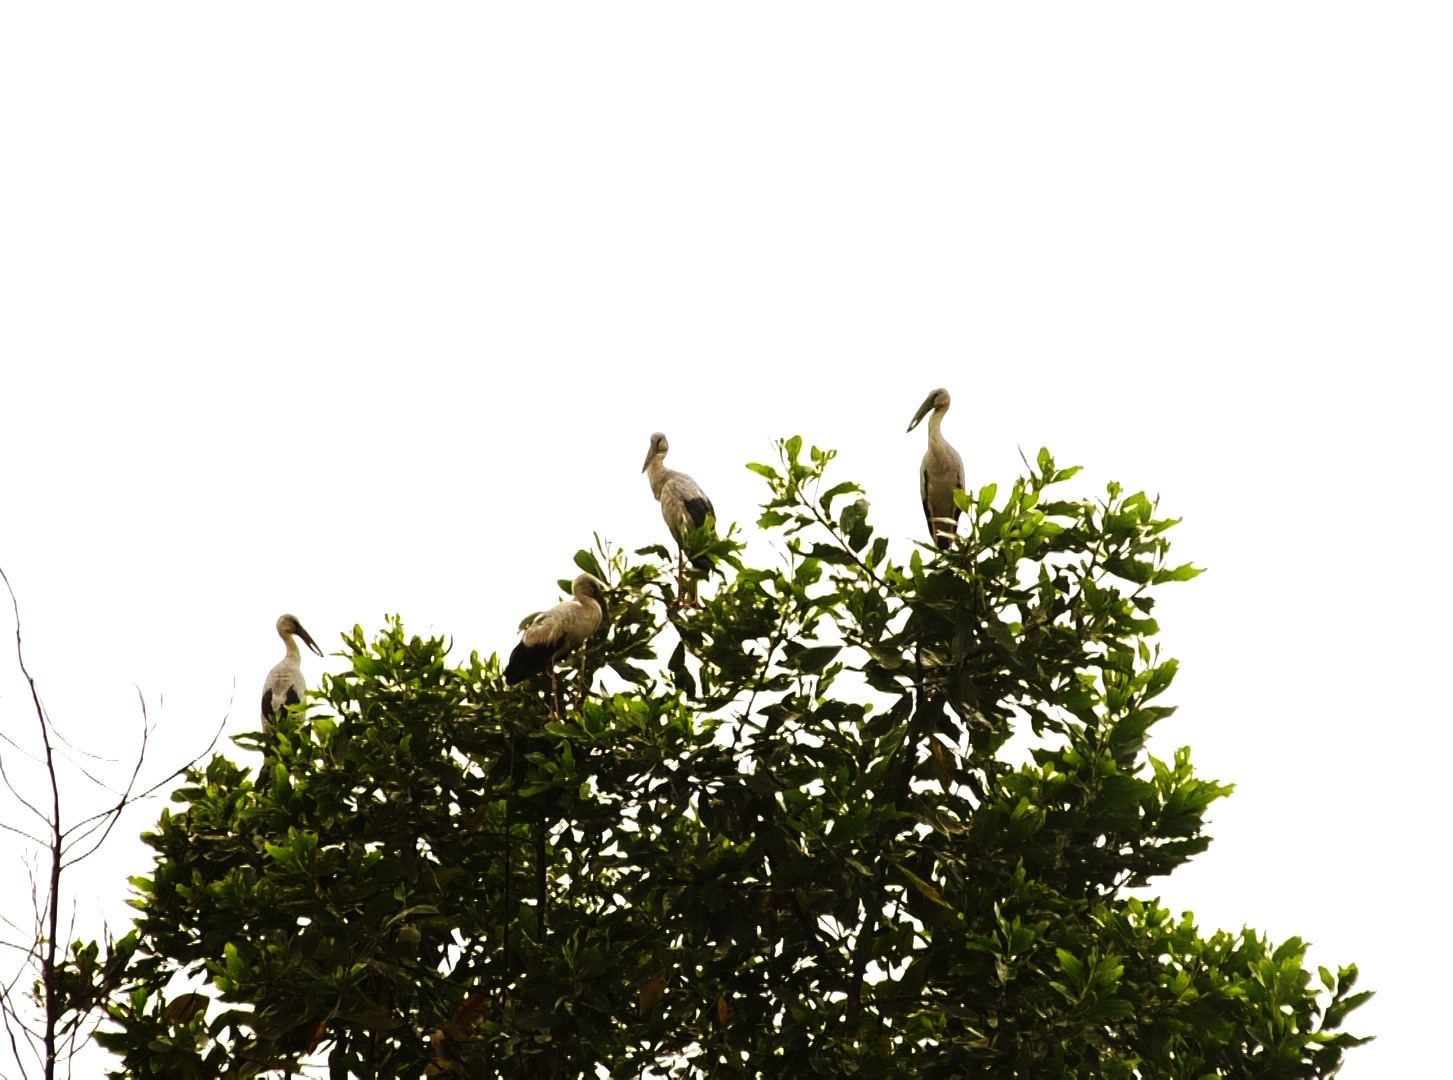 Chim cò nhạn thường trú ngụ trên những ngọn cây cao